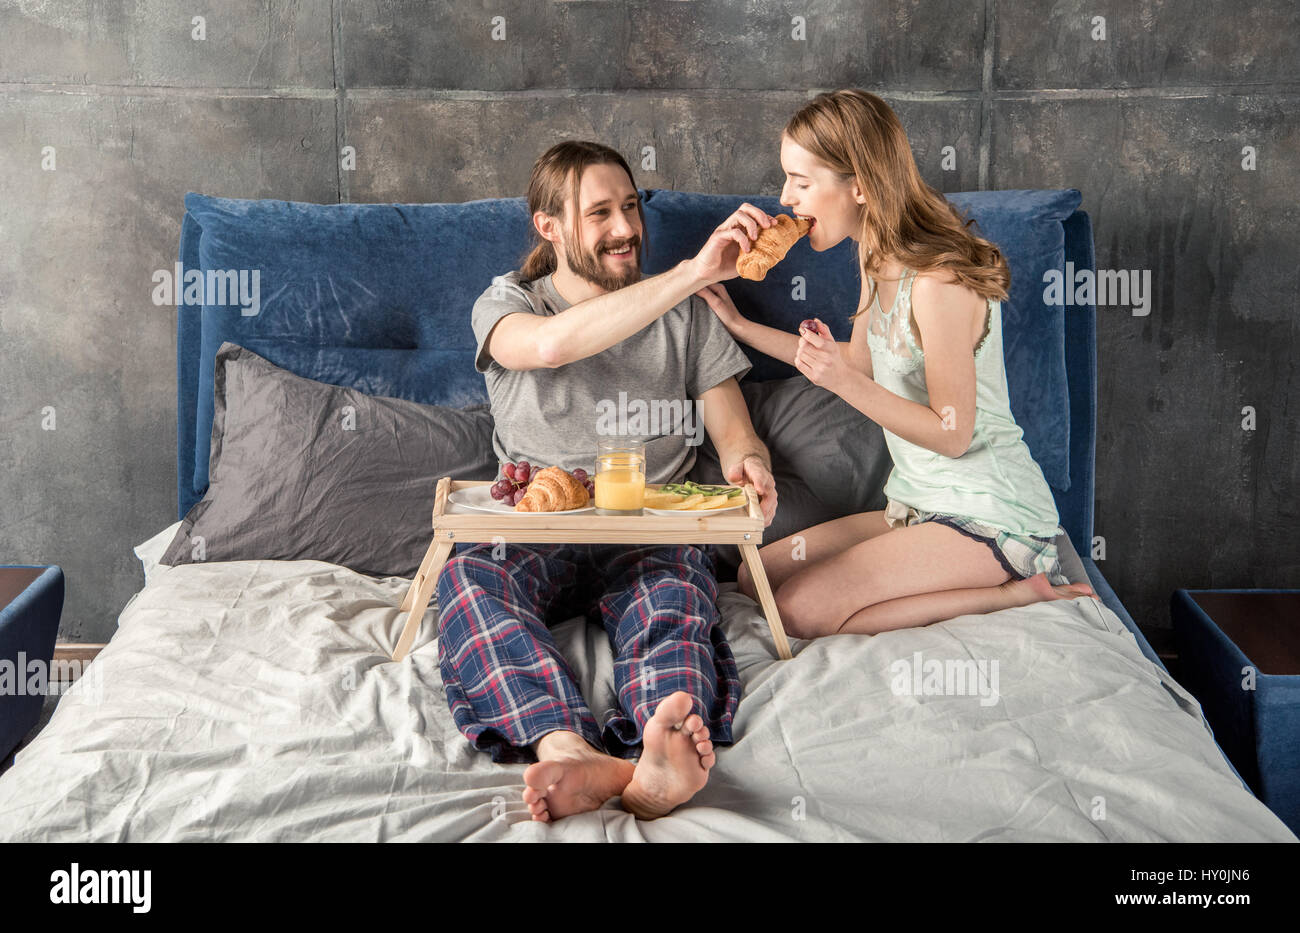 Junge Frau füttert ihr Freund mit Frühstück im Bett Stockfoto